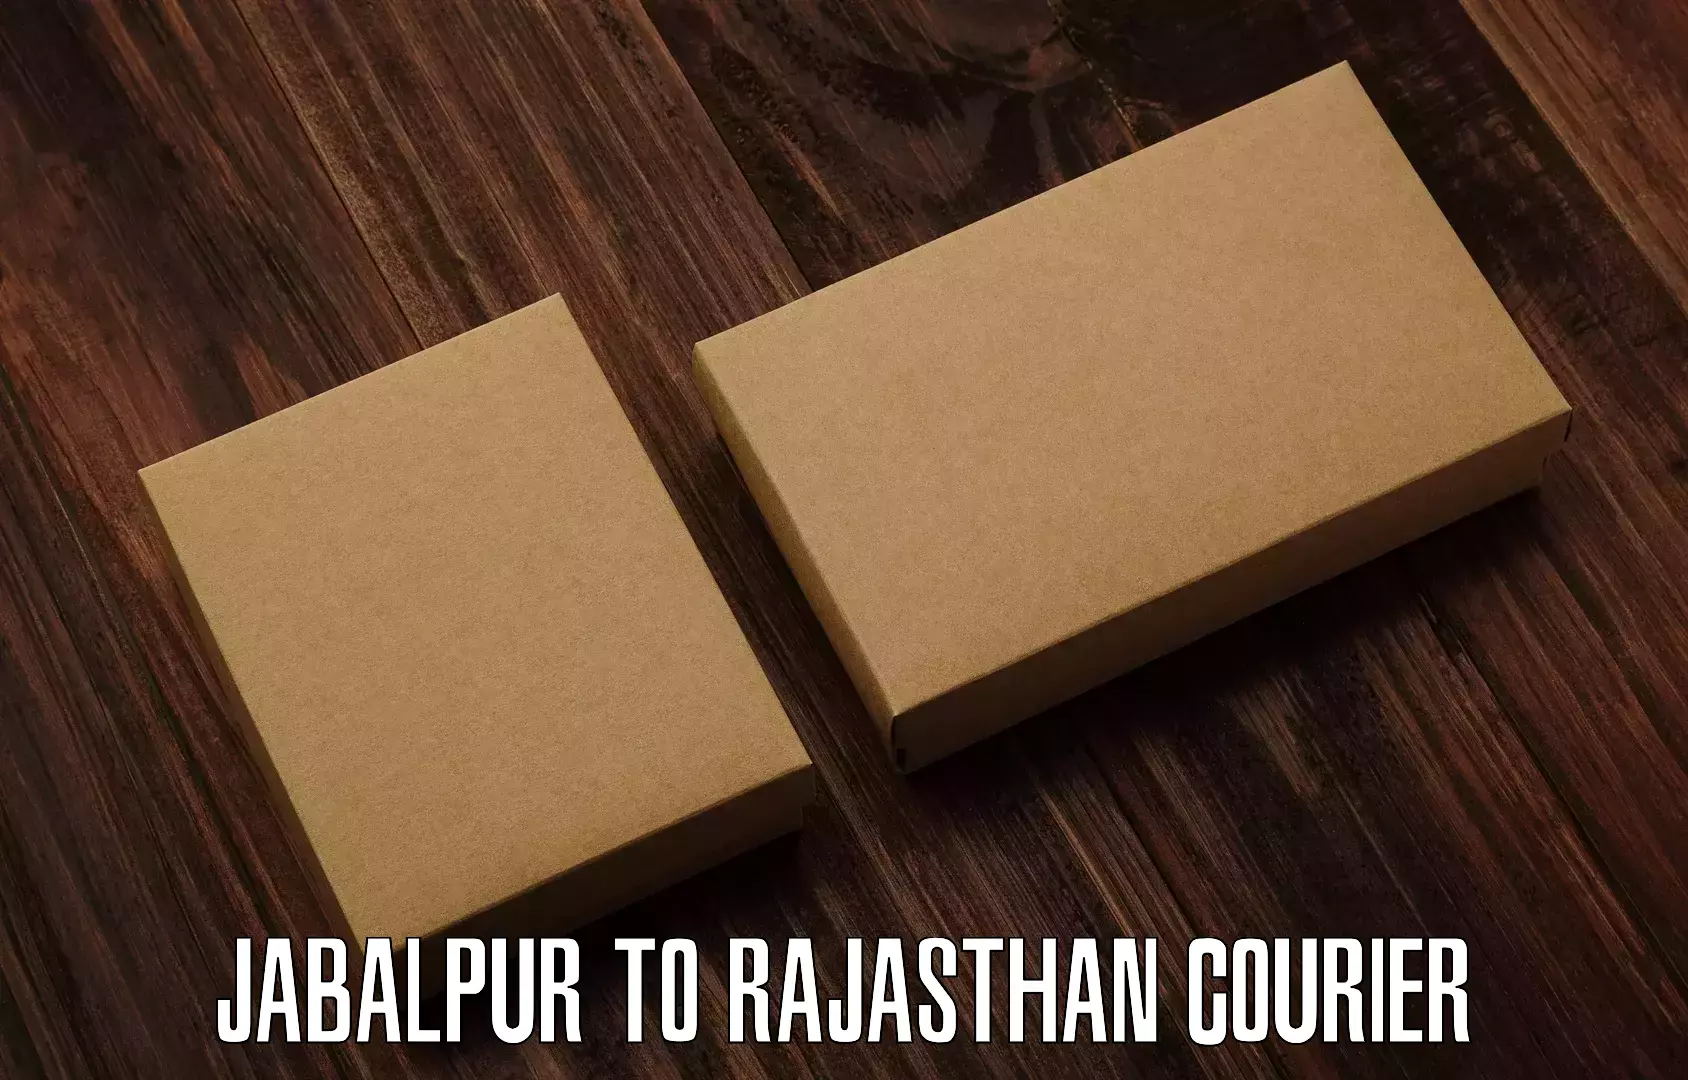 Easy return solutions Jabalpur to Balotra